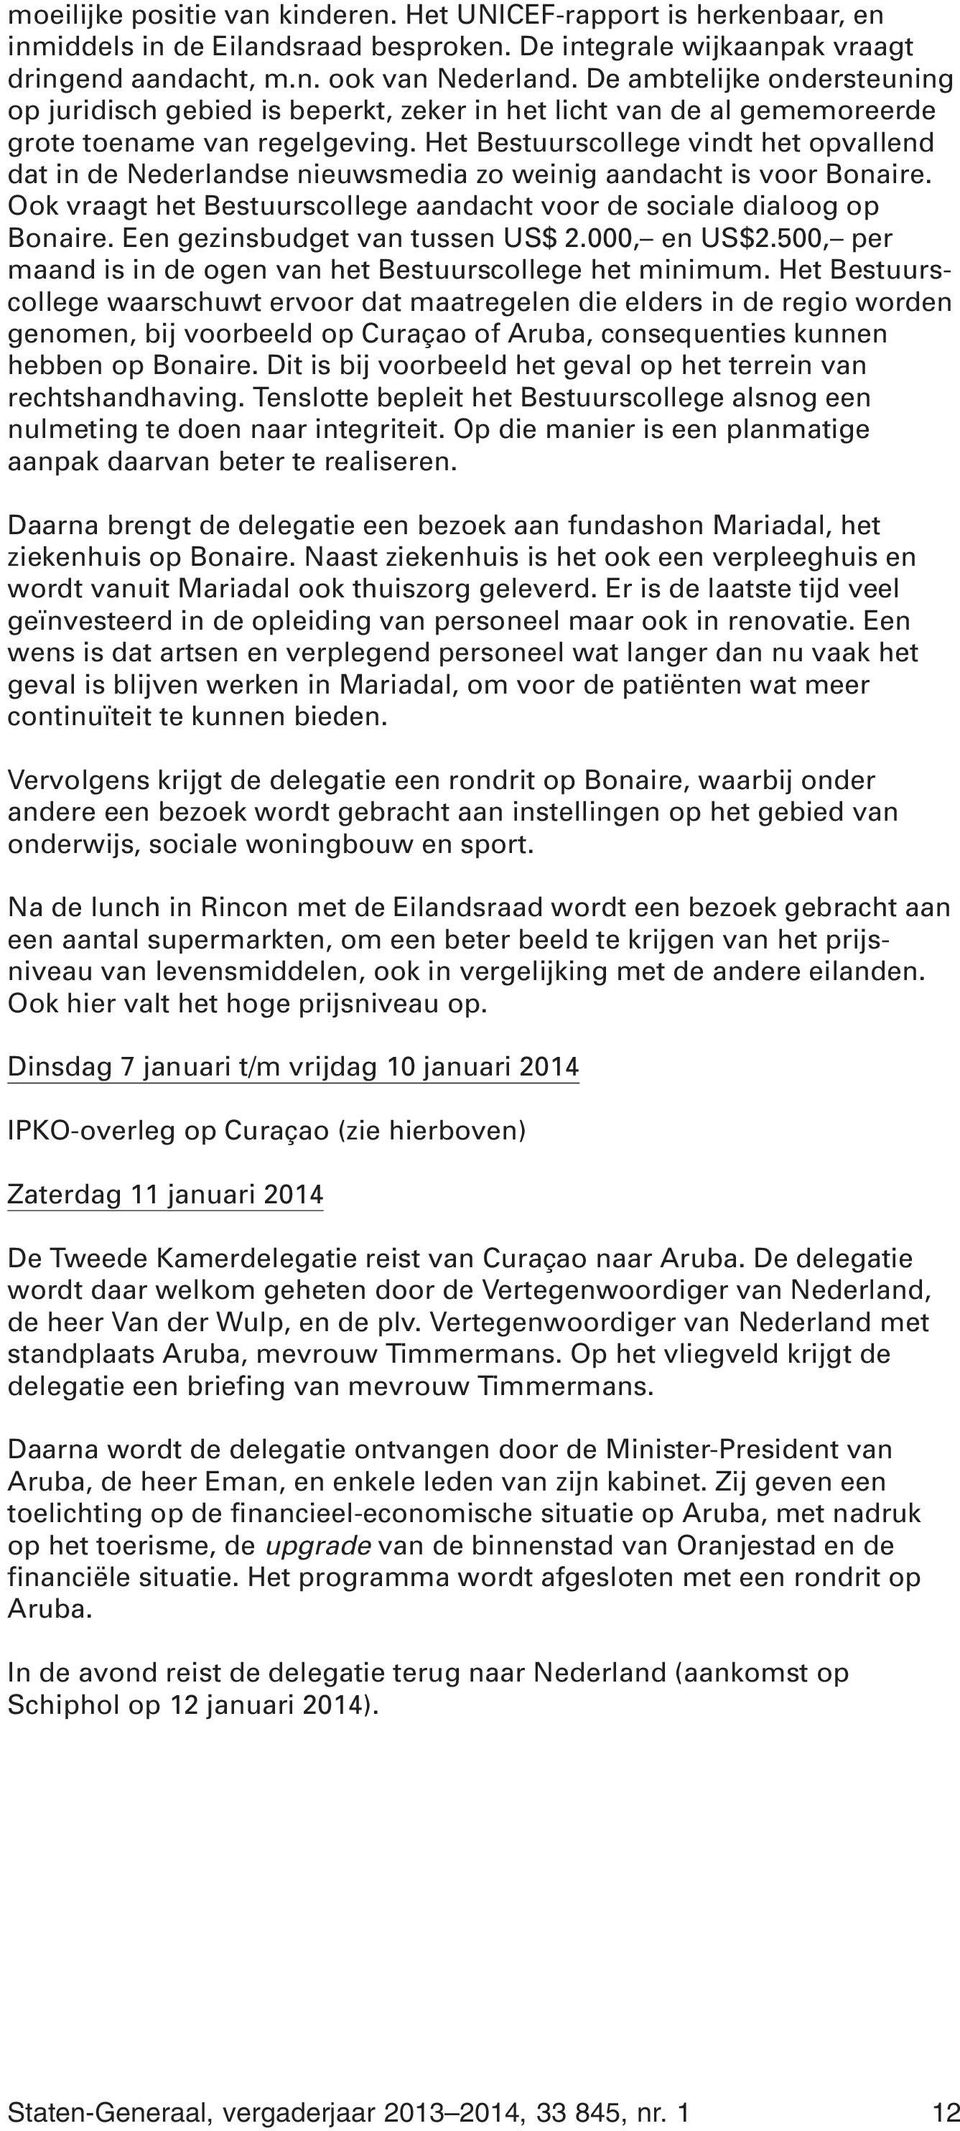 Het Bestuurscollege vindt het opvallend dat in de Nederlandse nieuwsmedia zo weinig aandacht is voor Bonaire. Ook vraagt het Bestuurscollege aandacht voor de sociale dialoog op Bonaire.